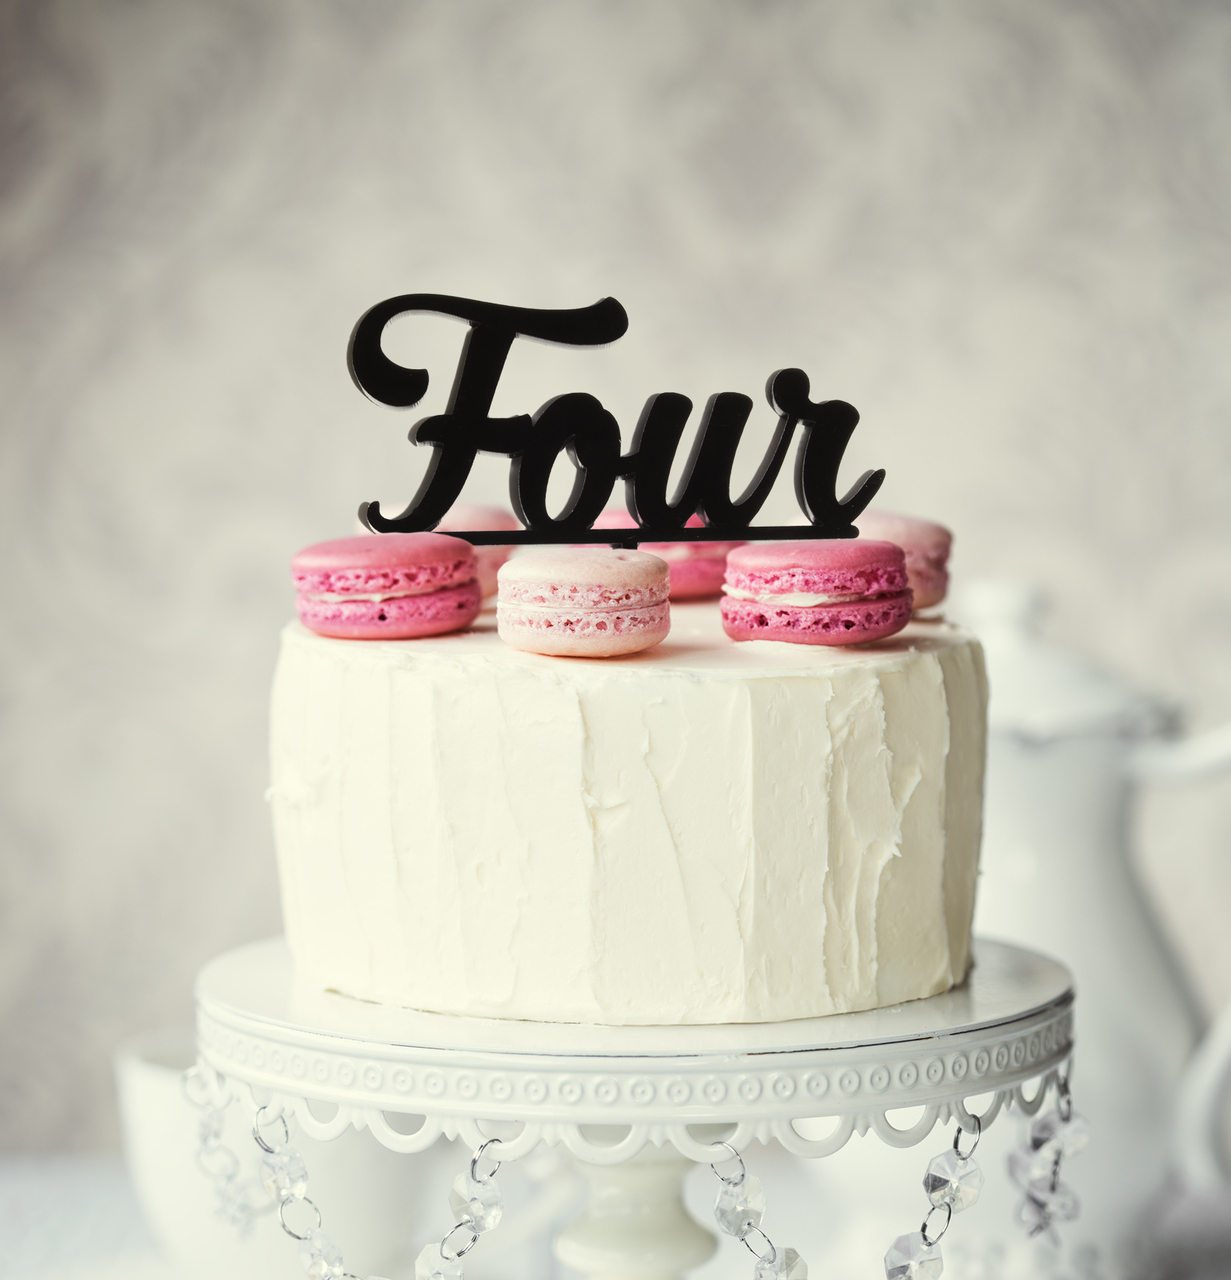 Number 4 Birthday Cake for Girls & Boys - SendBestGift.com